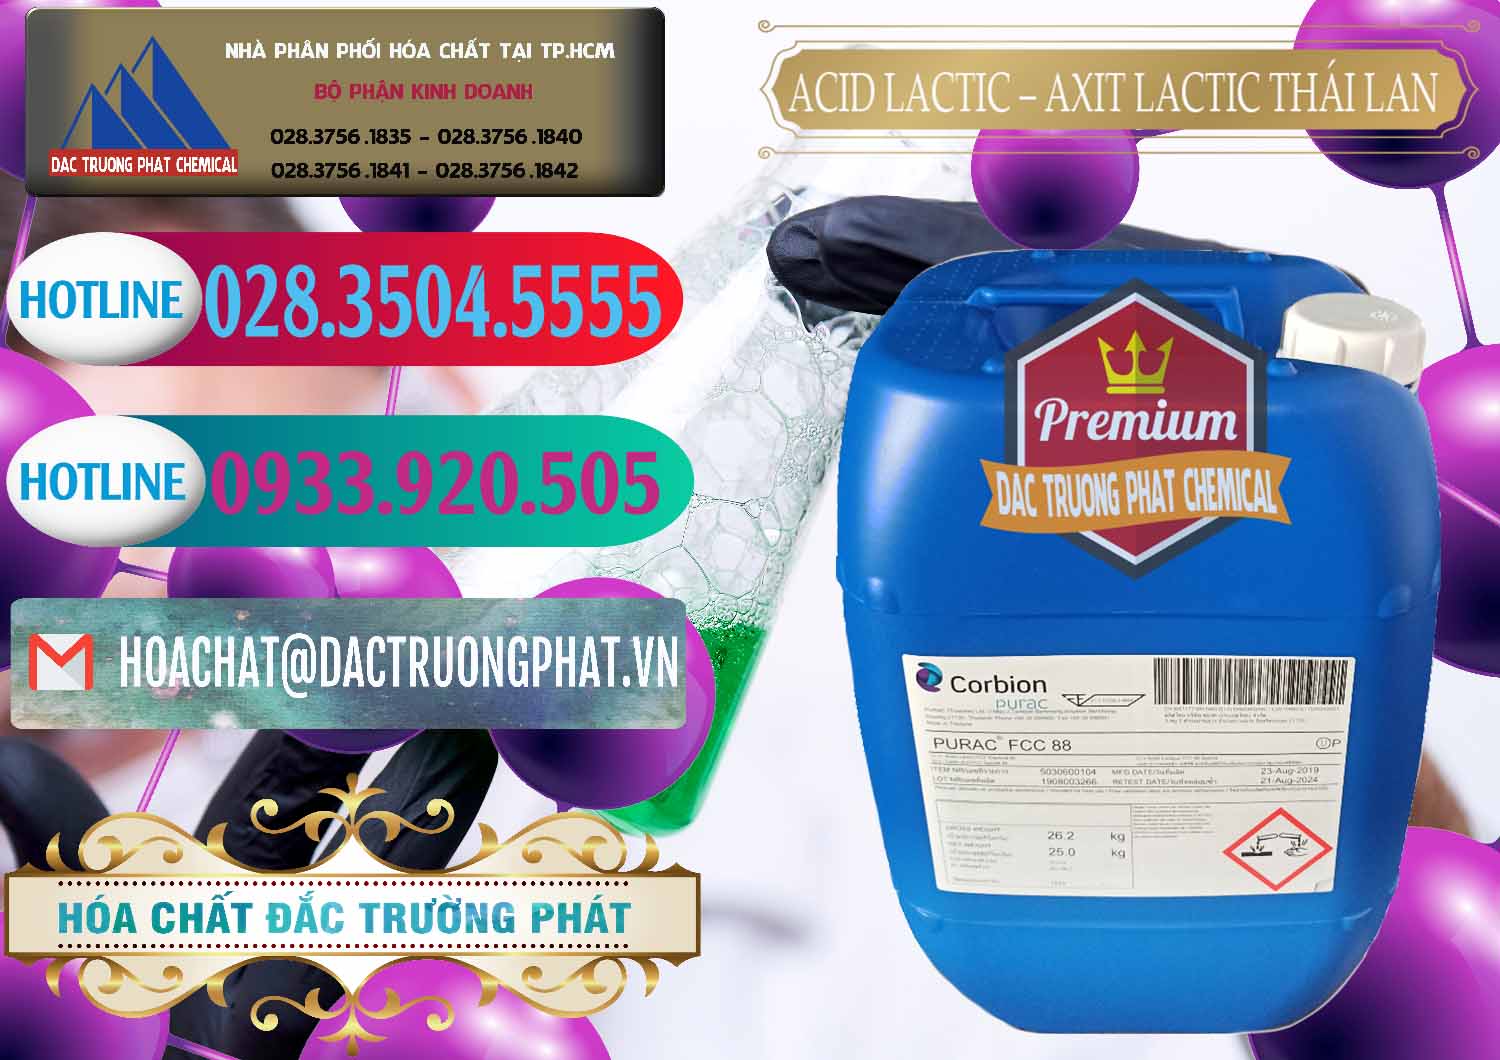 Cty chuyên bán _ cung ứng Acid Lactic – Axit Lactic Thái Lan Purac FCC 88 - 0012 - Cung ứng & phân phối hóa chất tại TP.HCM - truongphat.vn